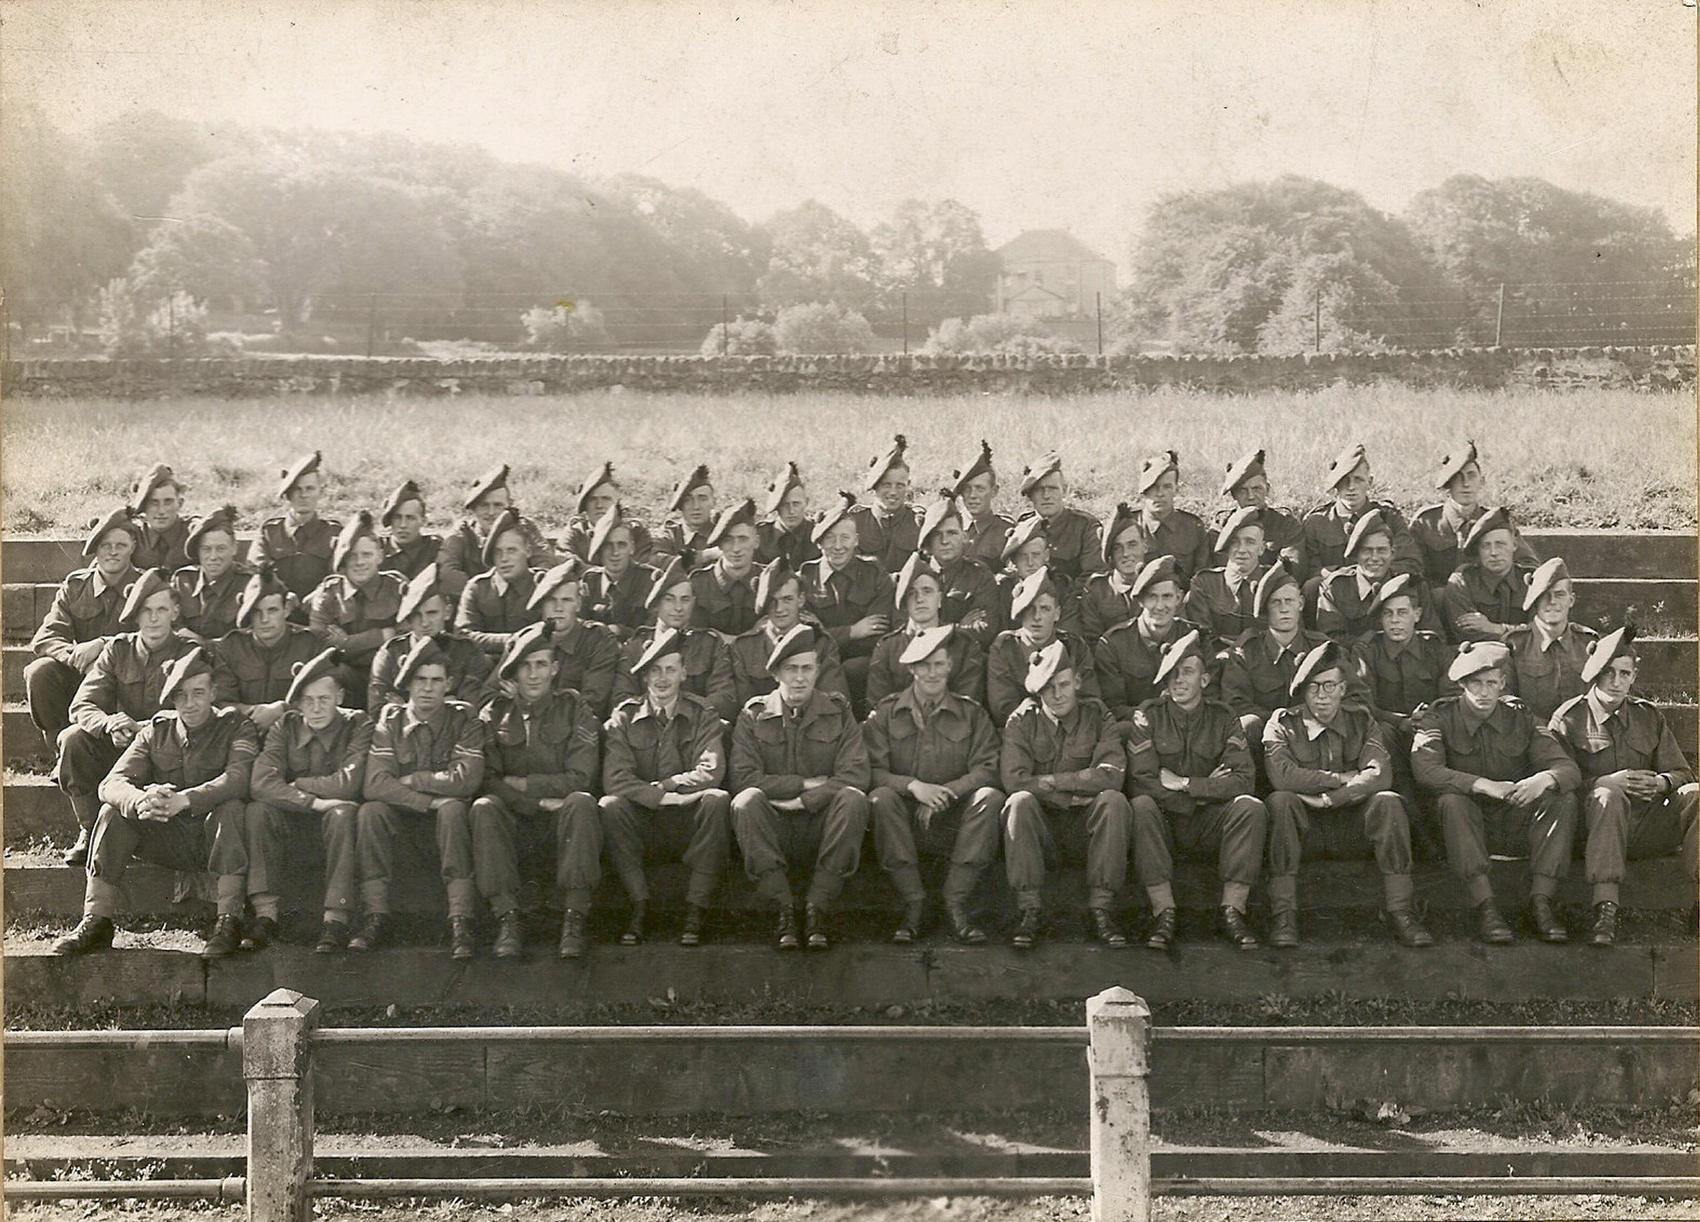 No.9 Commando troop photo